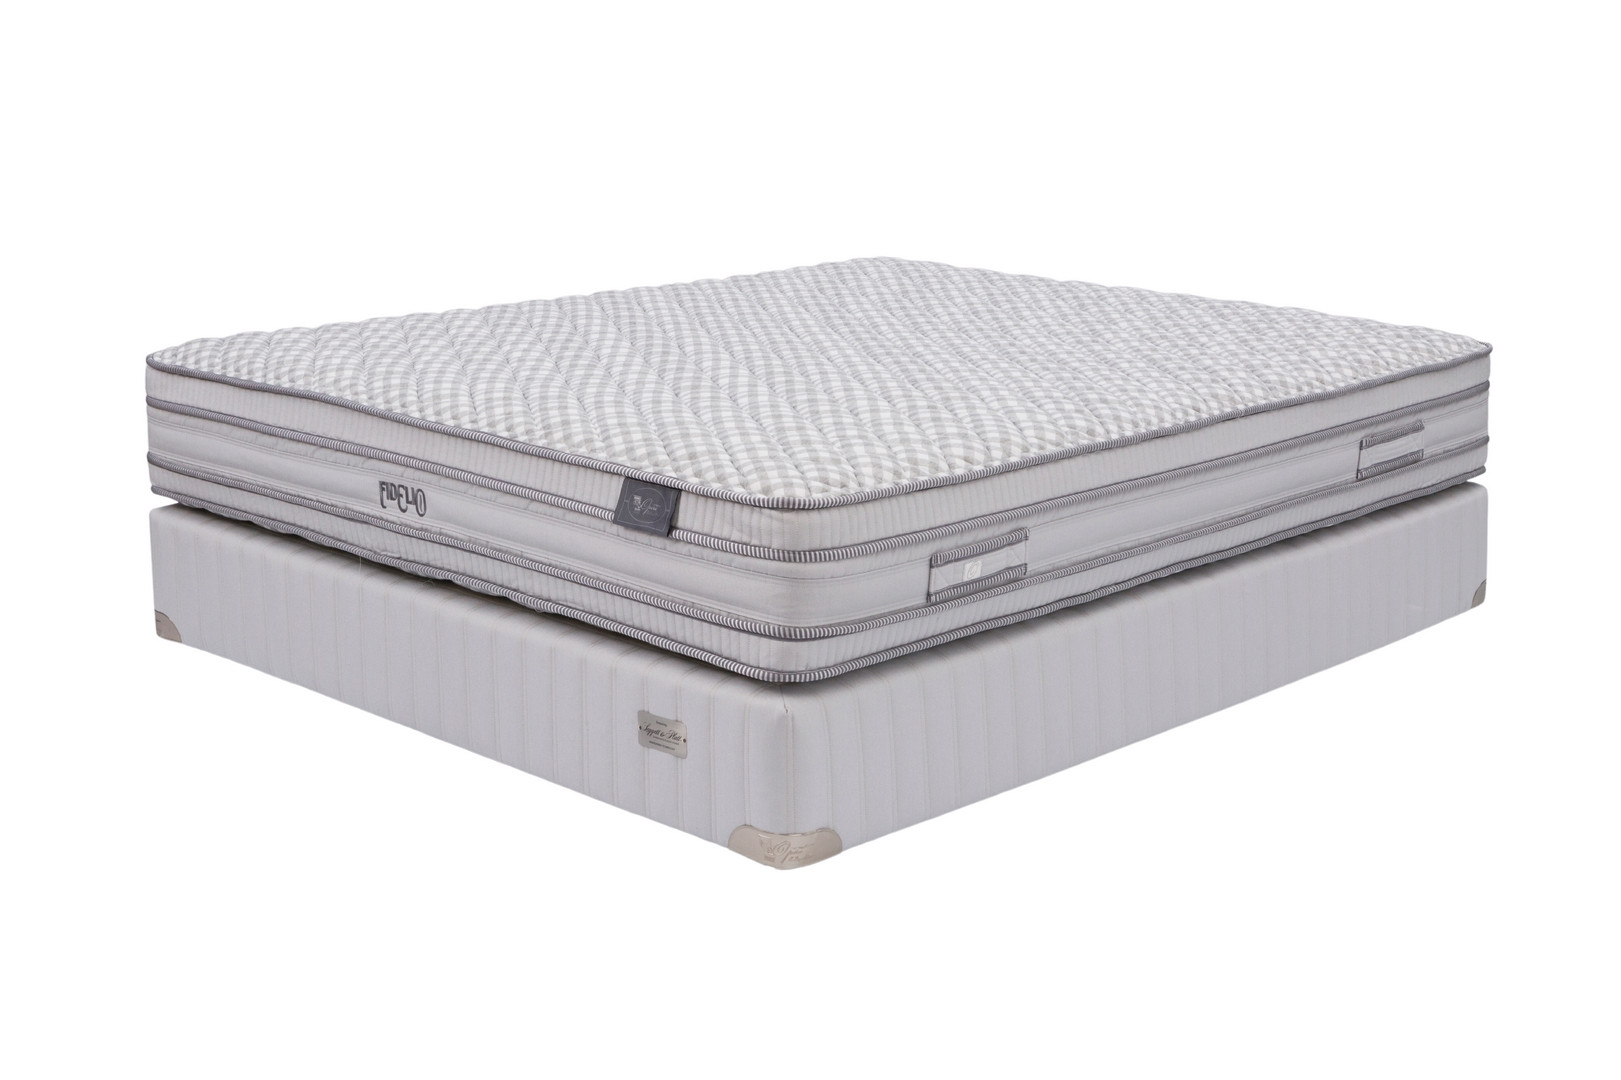 Opera orthopedic mattress Fidelio 160x200 medium, 26.25cm